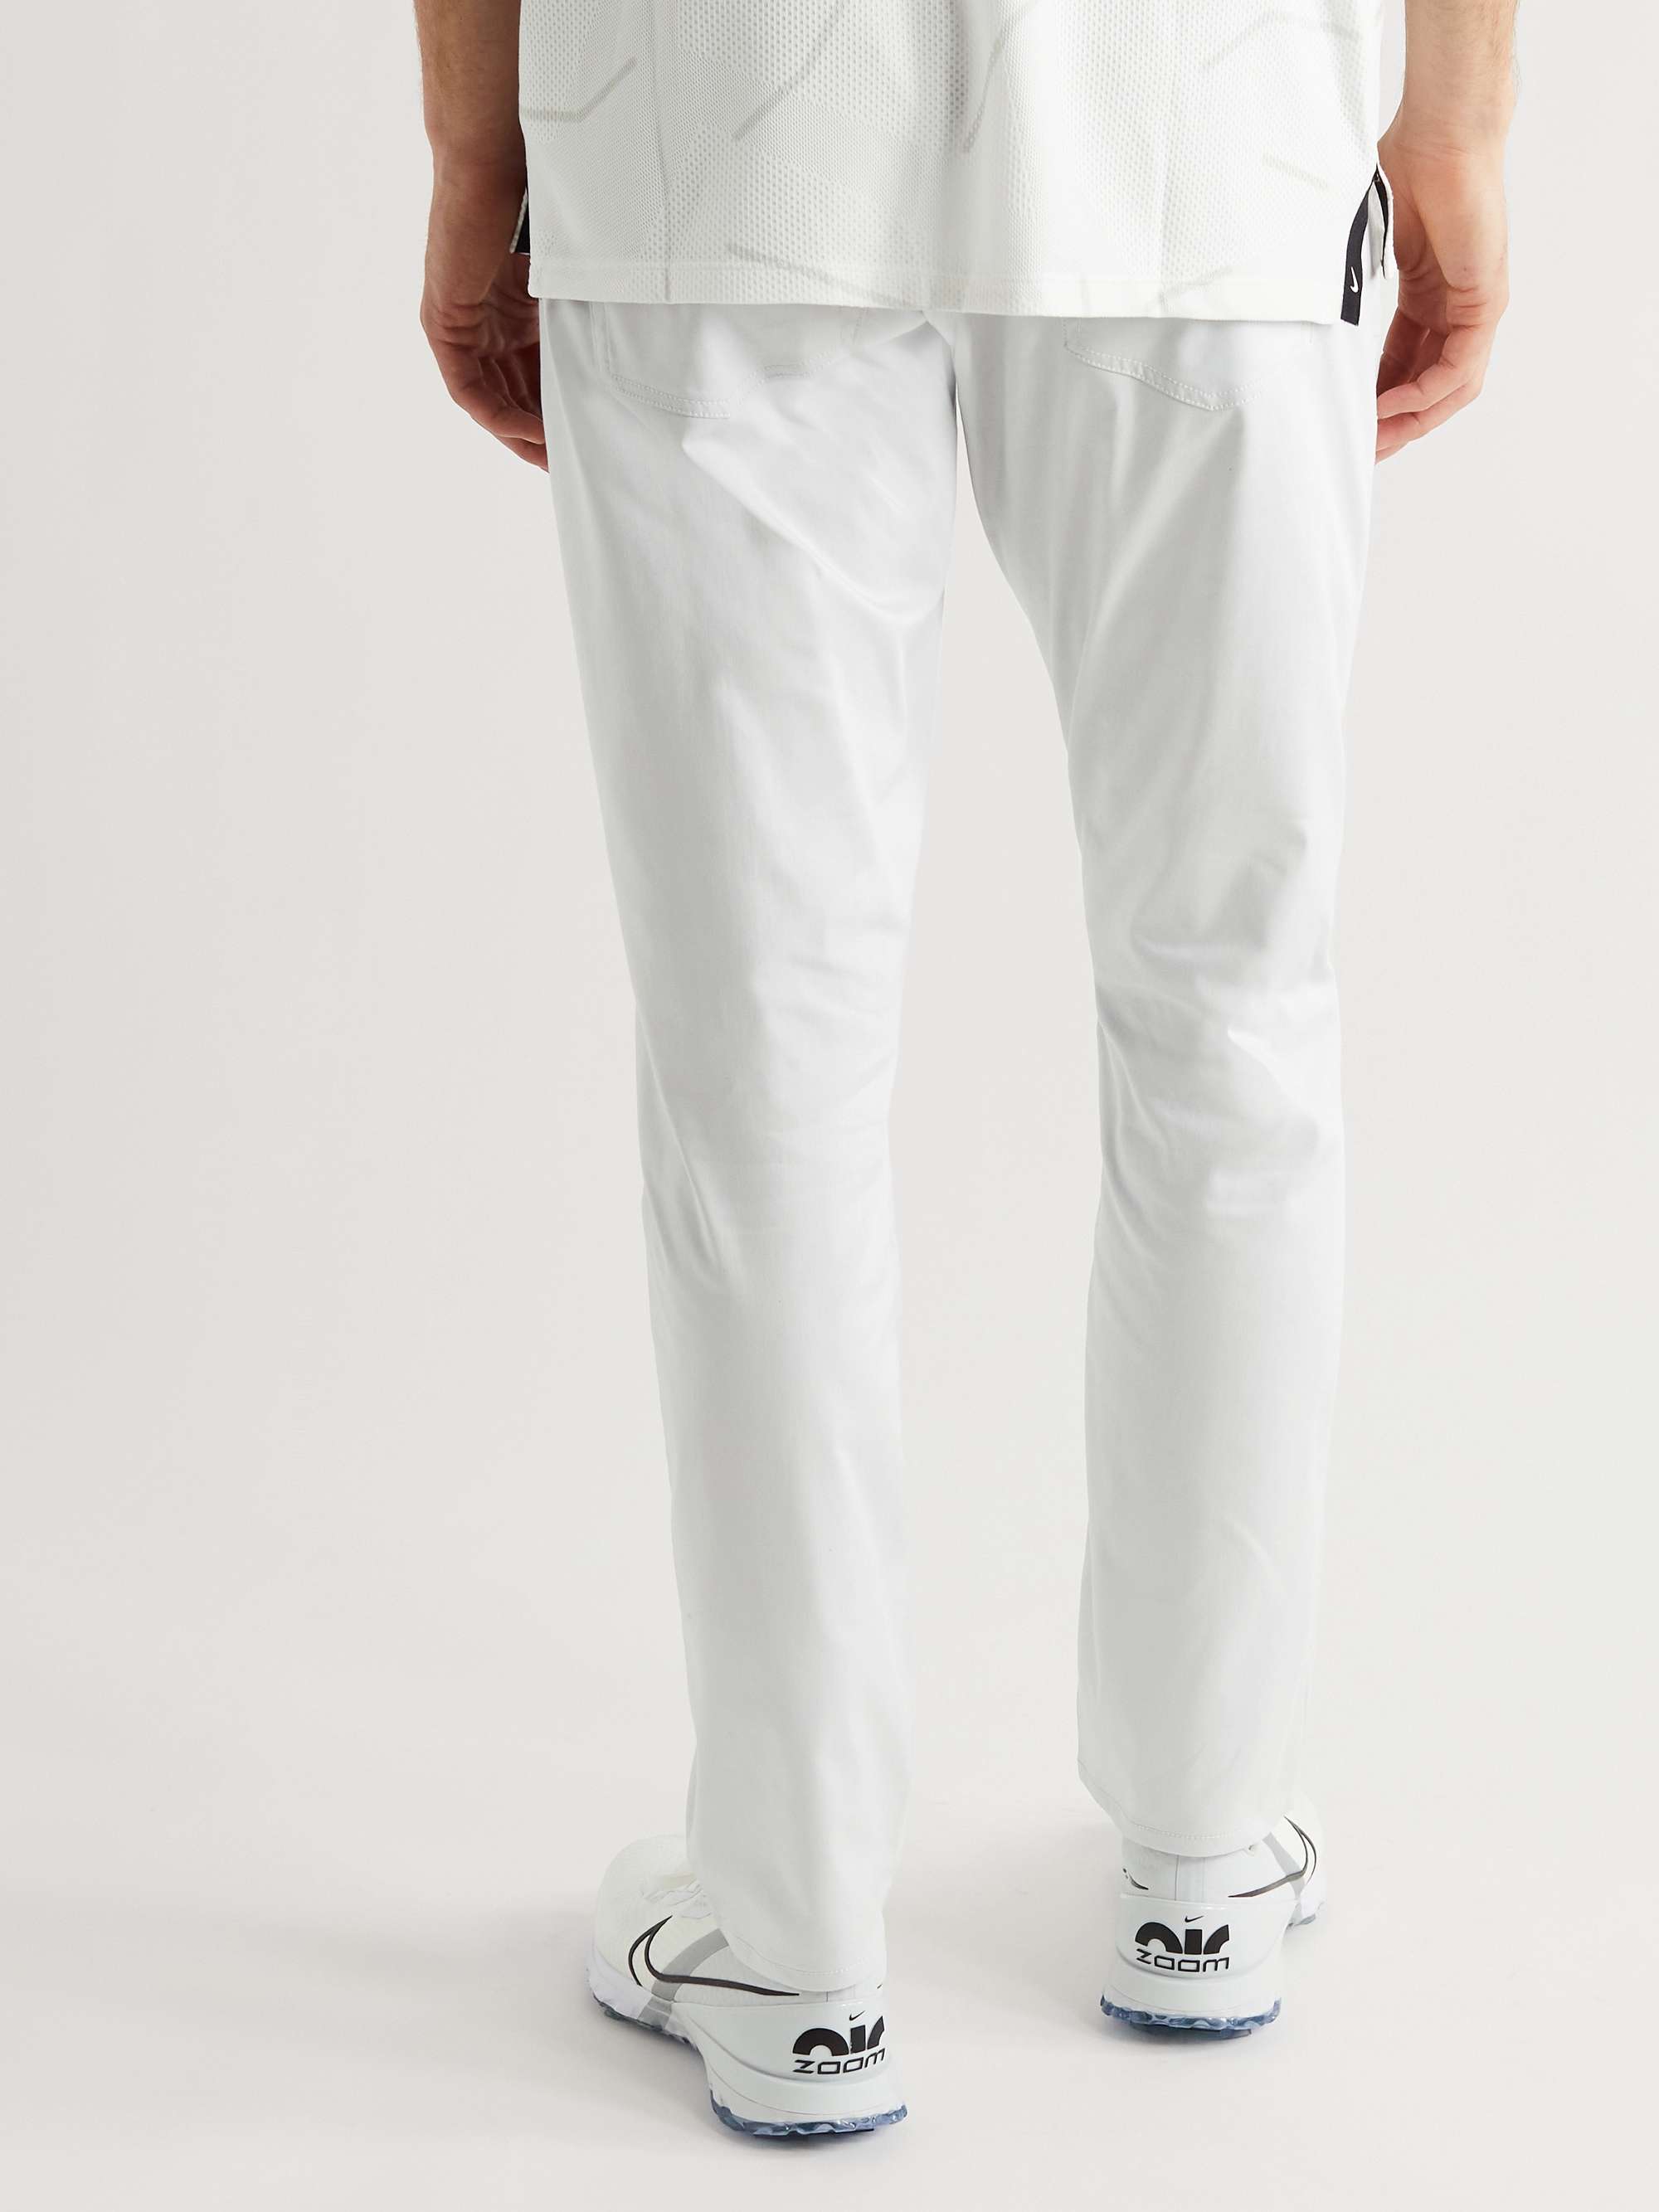 NIKE GOLF Flex Slim-Fit Dri-FIT Golf Trousers